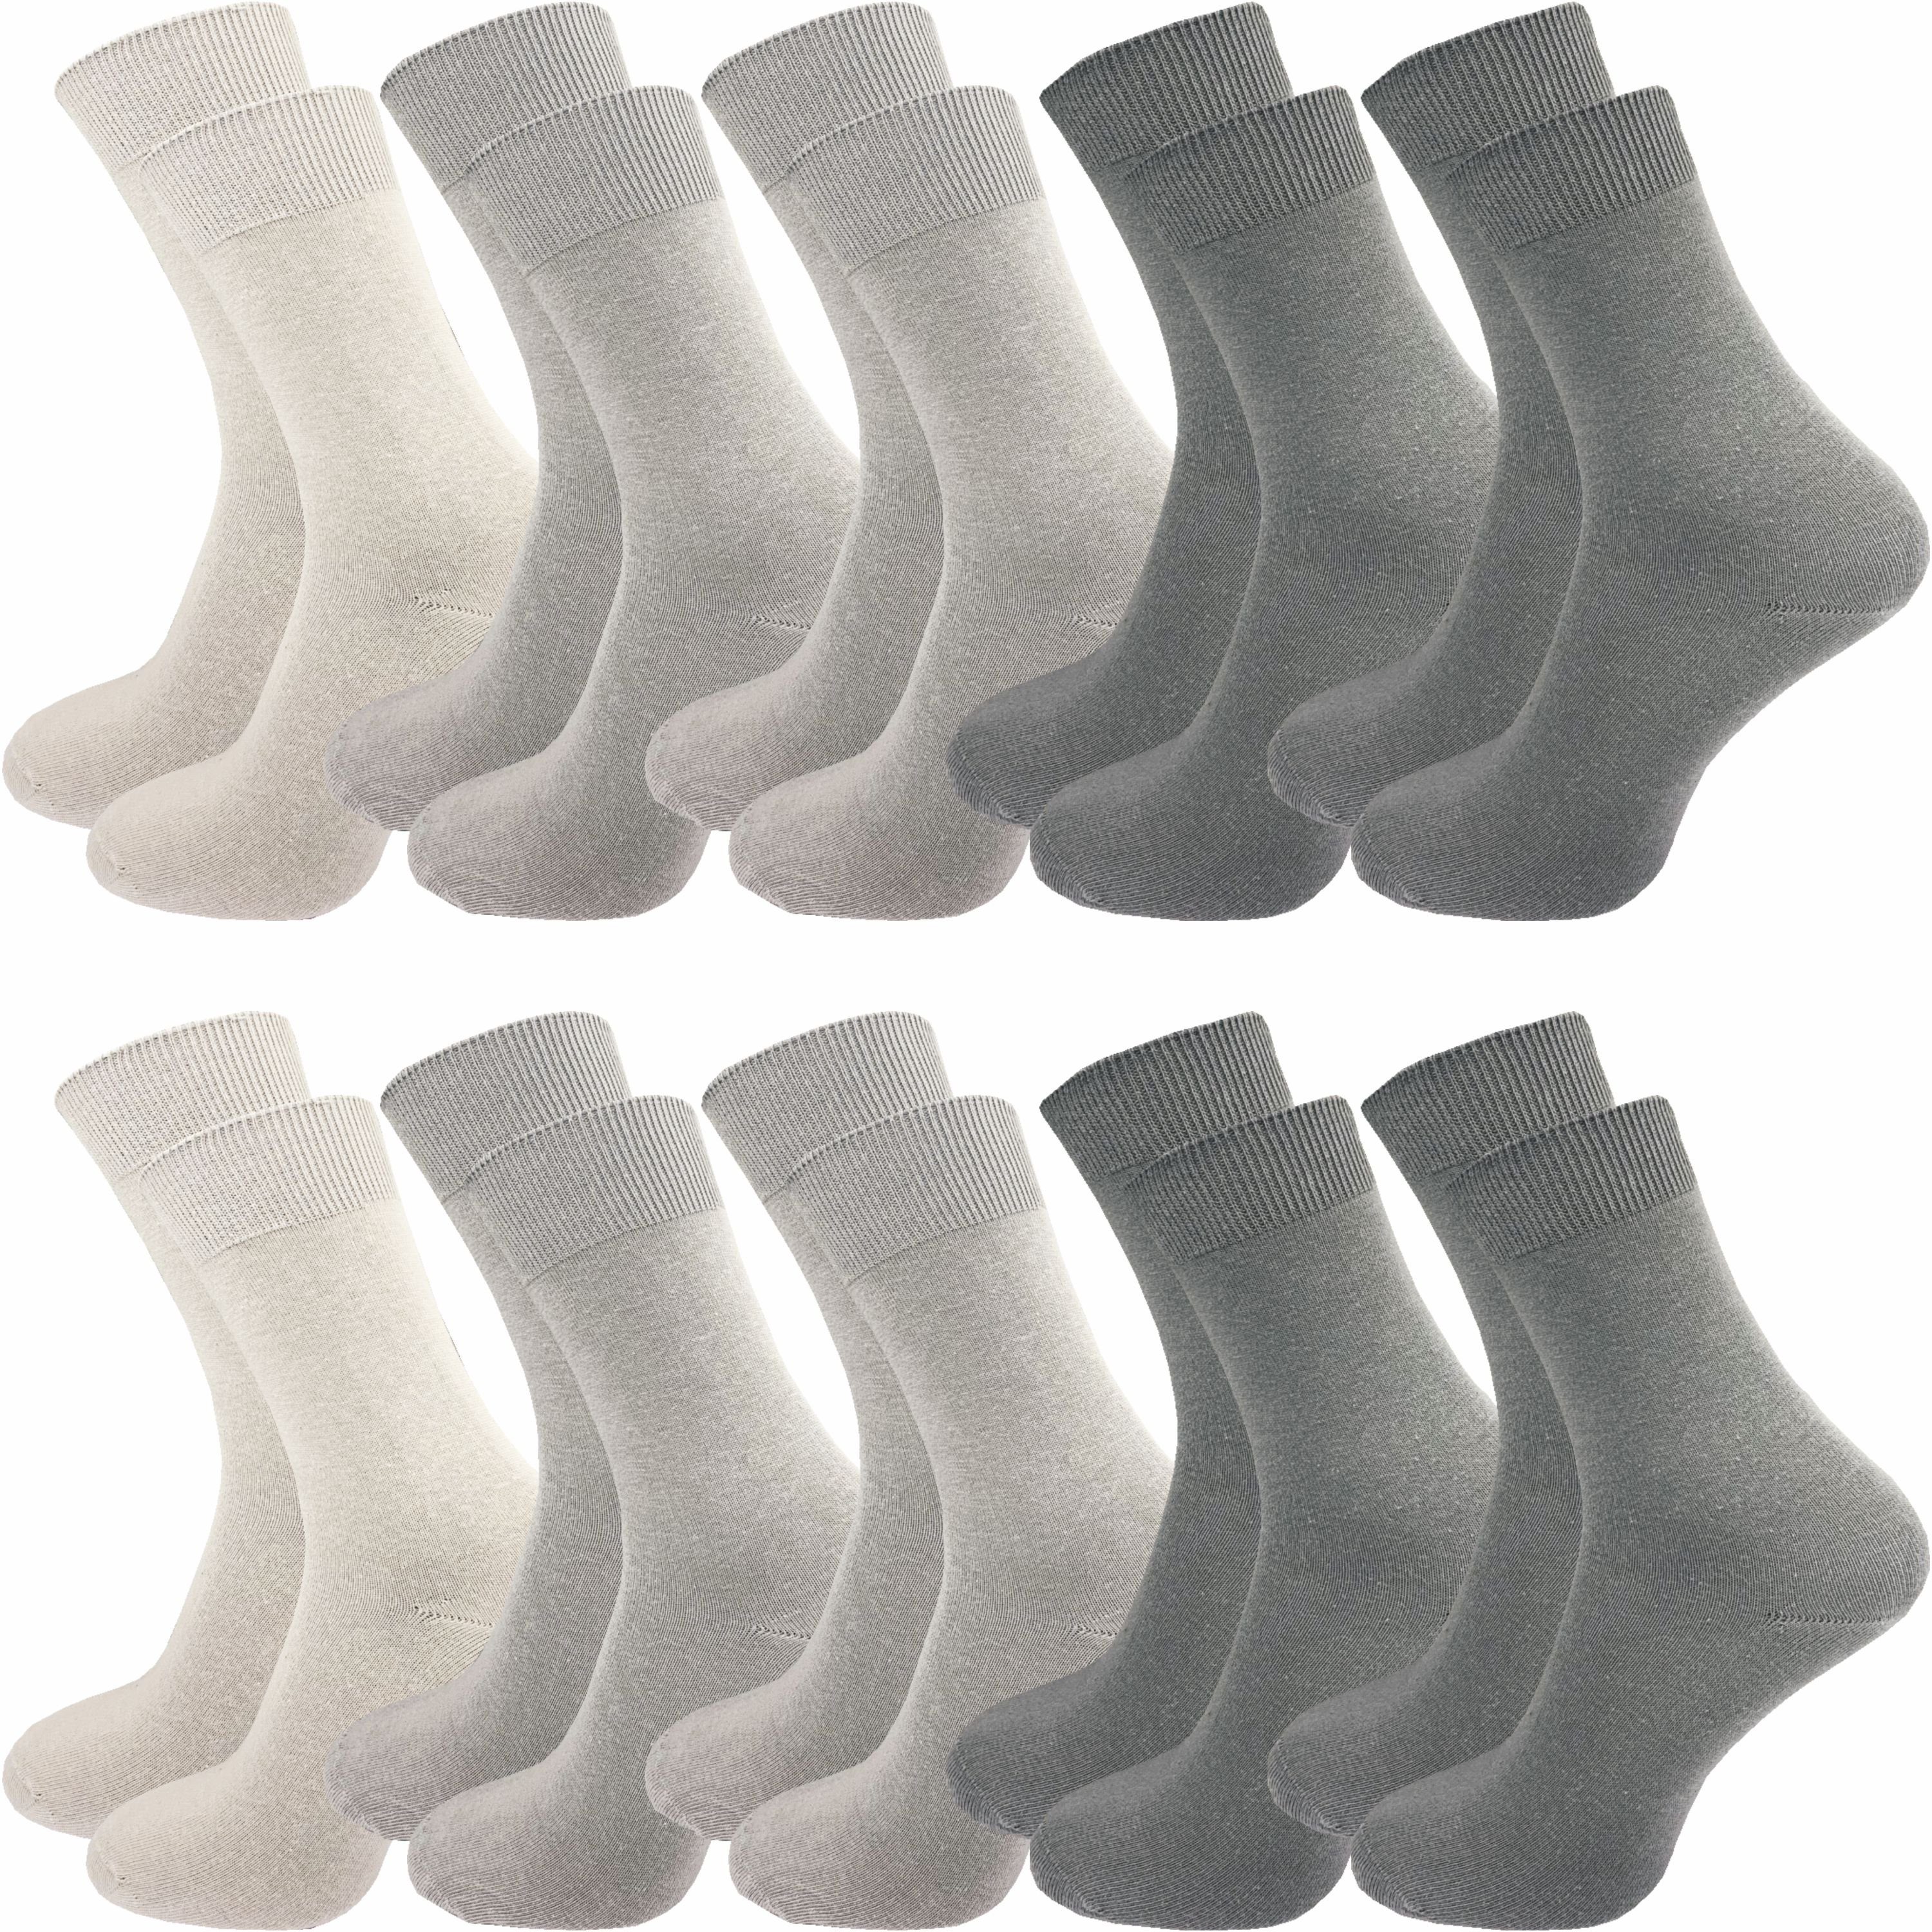 GAWILO Socken für Damen und Herren aus 100% Baumwolle, Business und Freizeit (10 Paar) mit venenfreundlichem Komfortbund Grautöne